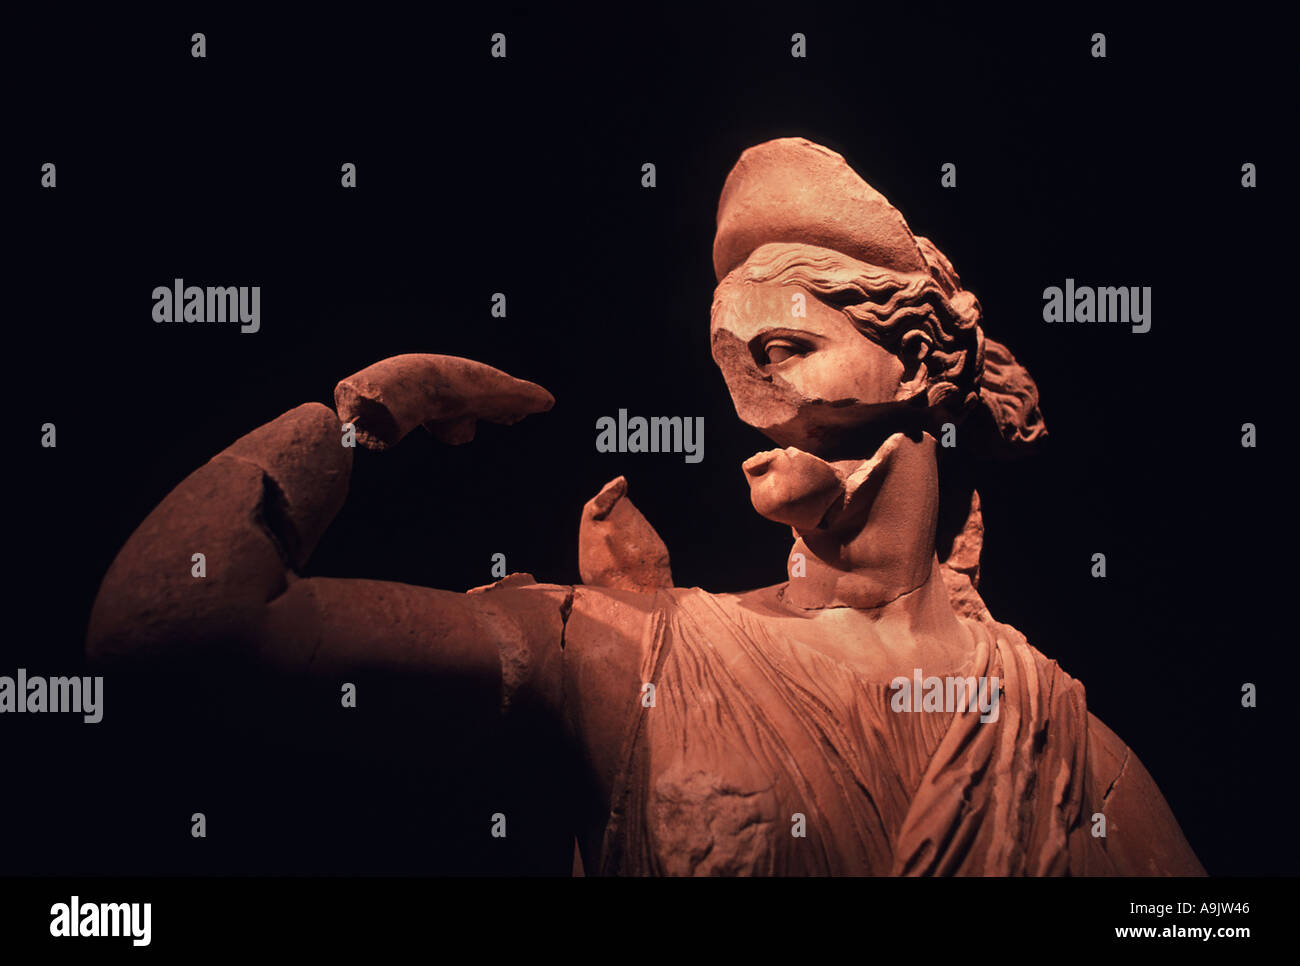 Statue romaine en exposition Musée régional d'Antalya Turquie Impératrice de l'époque romaine découvert en fouilles à Perge Turquie Banque D'Images